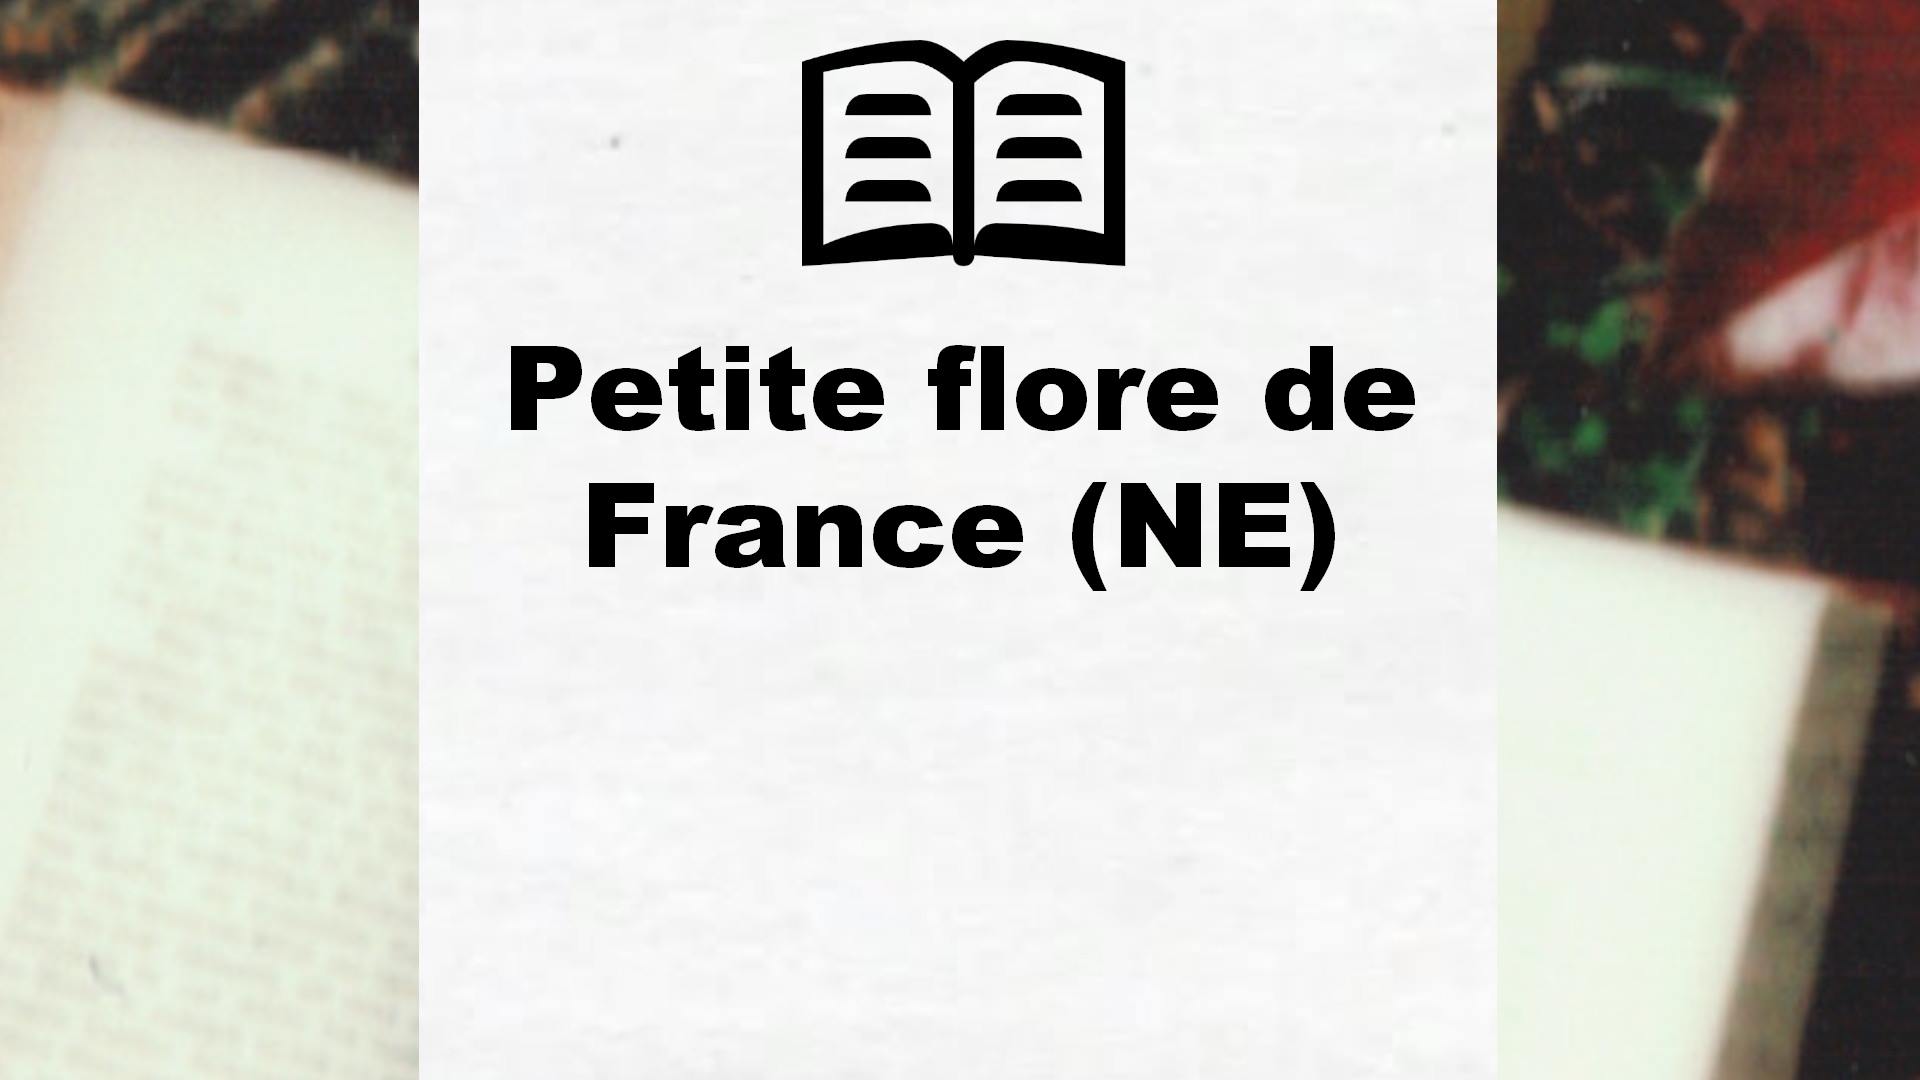 Petite flore de France (NE) – Critique